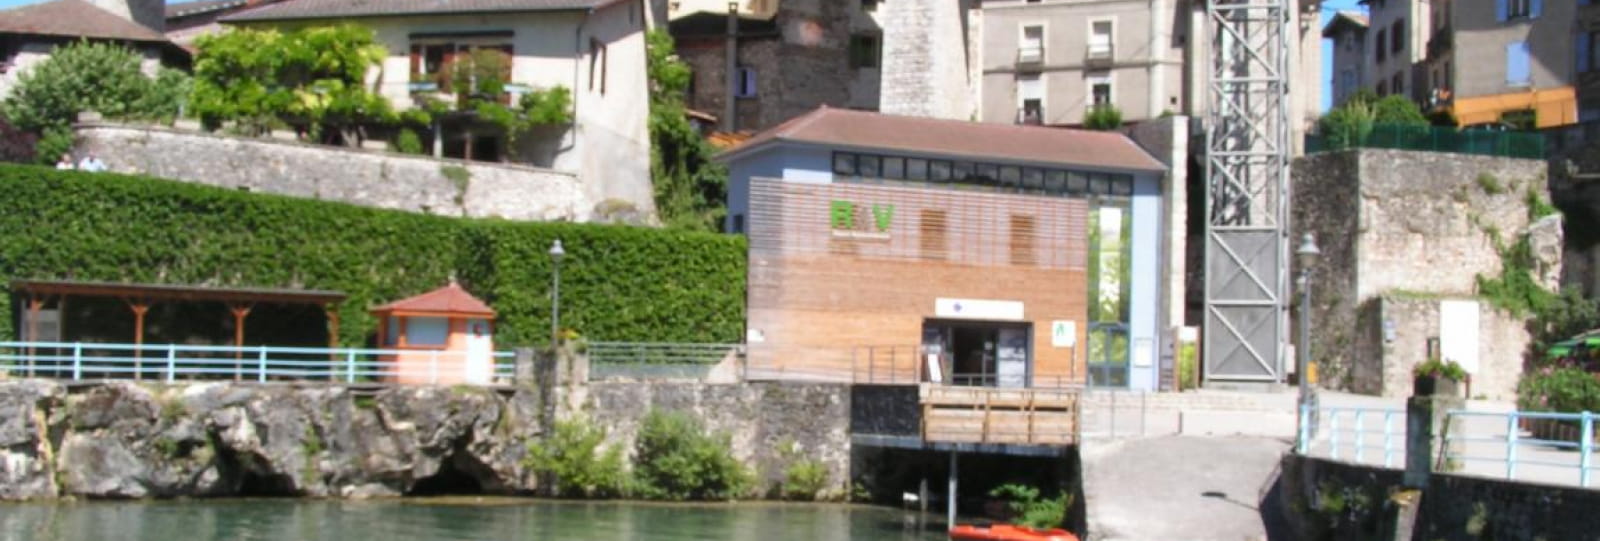 Office de Tourisme Vercors Drôme - Accueil de Saint Nazaire en Royans